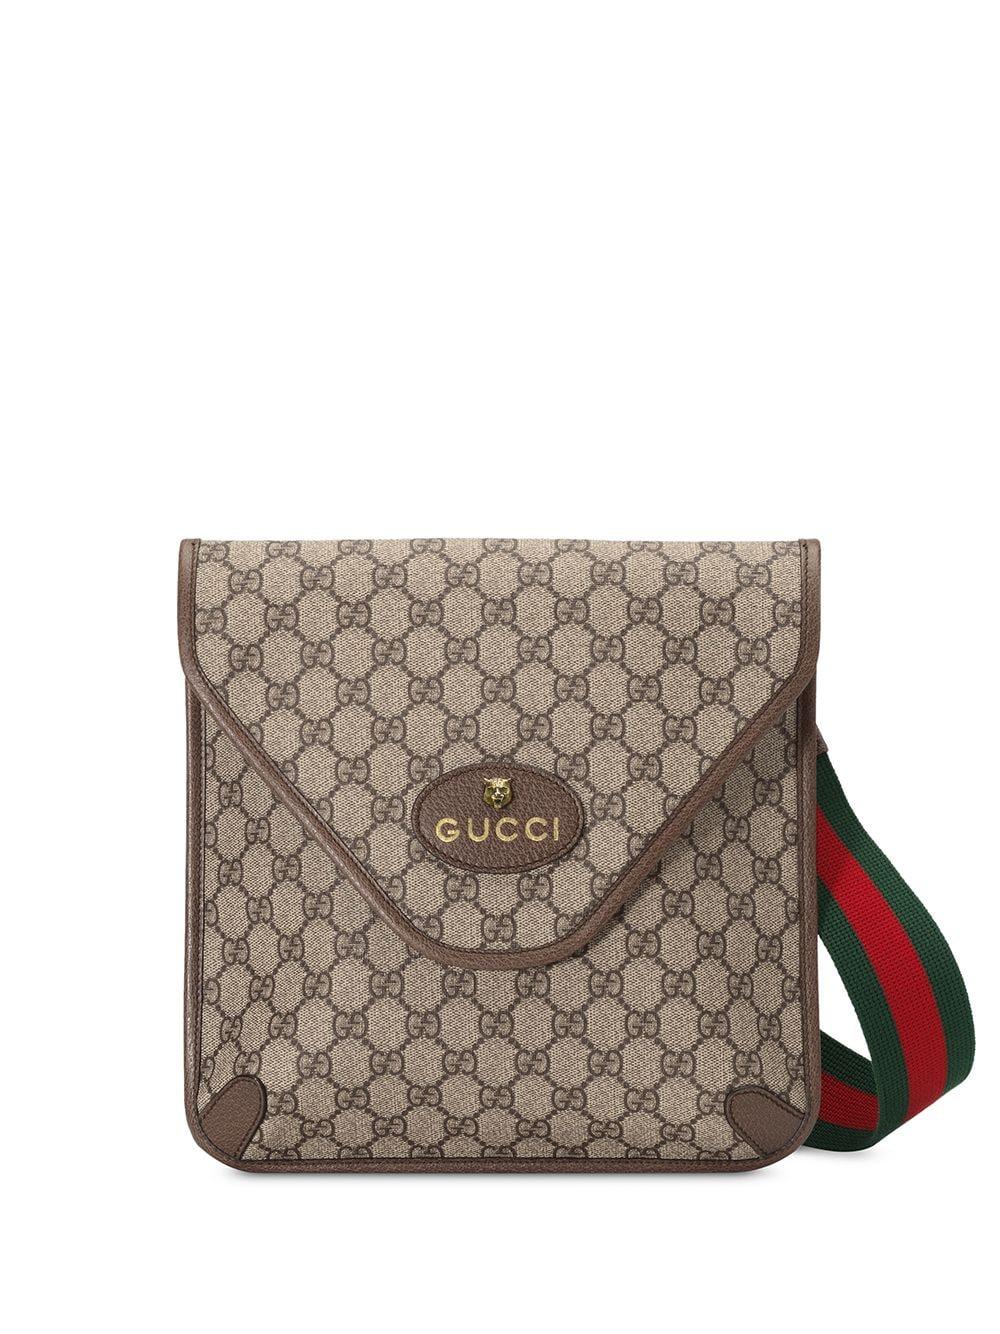 Gucci Neo Vintage GG Medium Messenger Bag for Men - Save 6% - Lyst